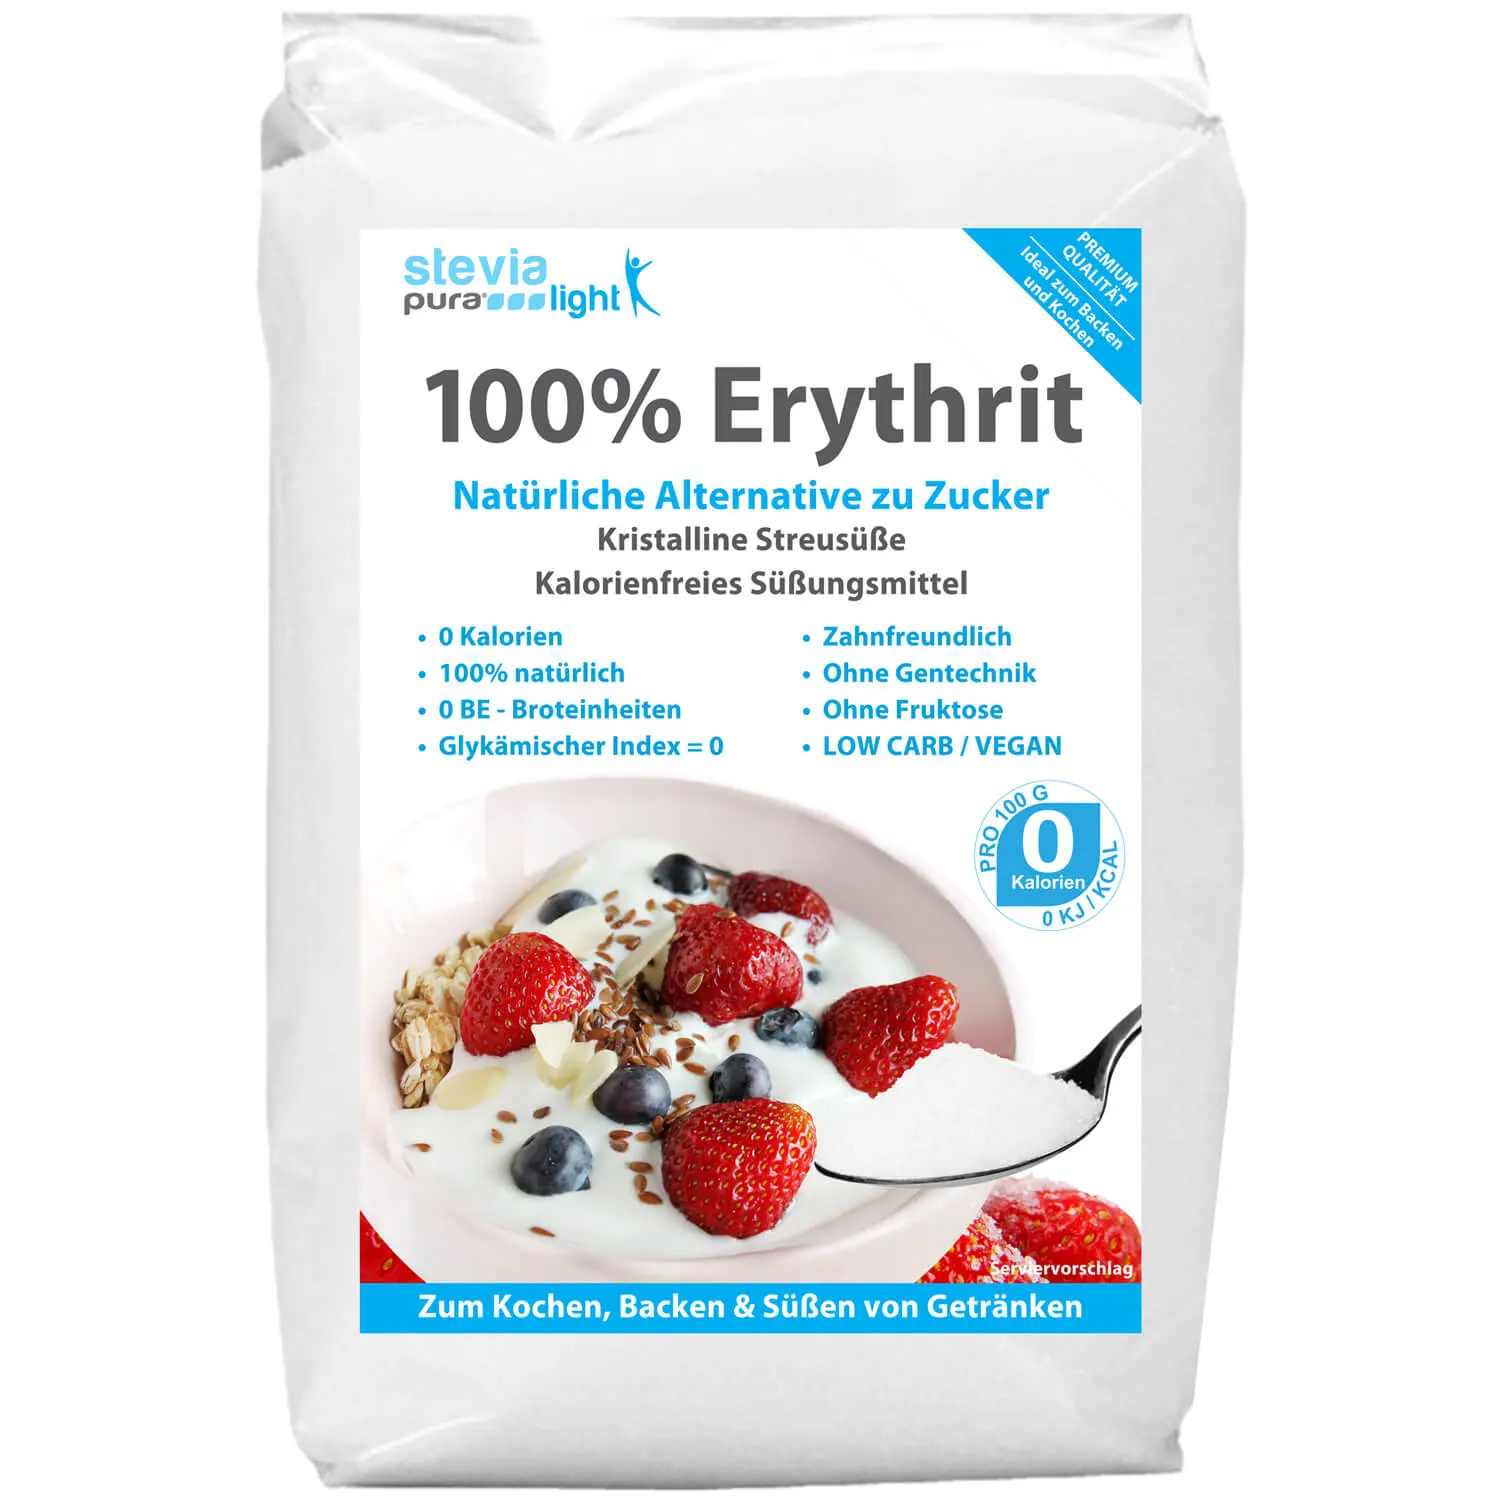 Comprar Eritritol: O substituto do açúcar é também chamado Eritritol.